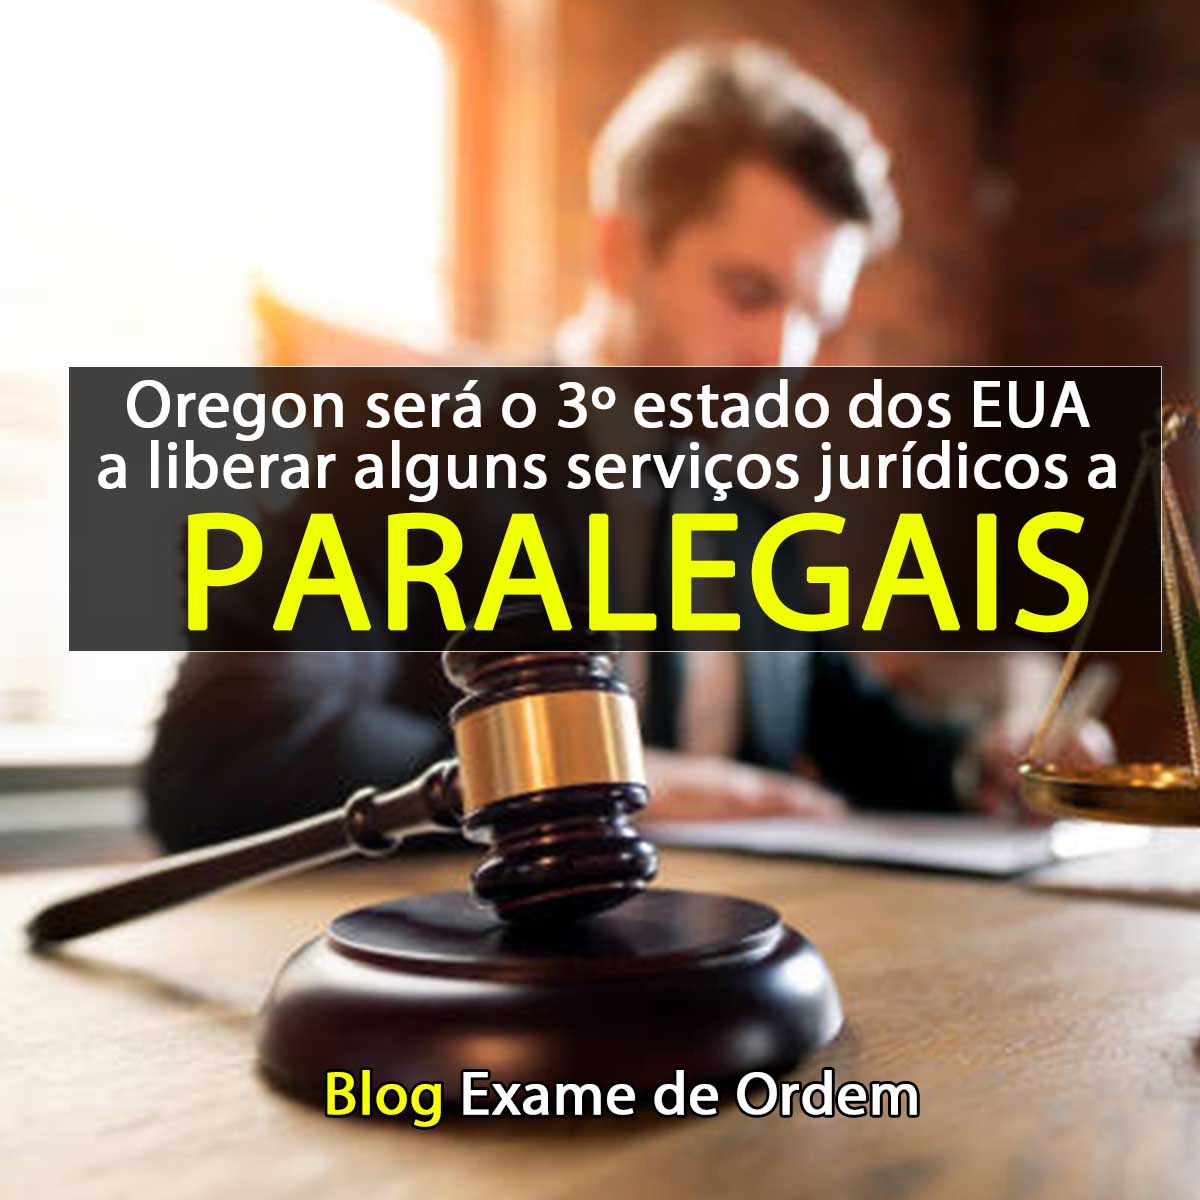 Oregon será 3º estado dos EUA a liberar certos serviços jurídicos a paralegais